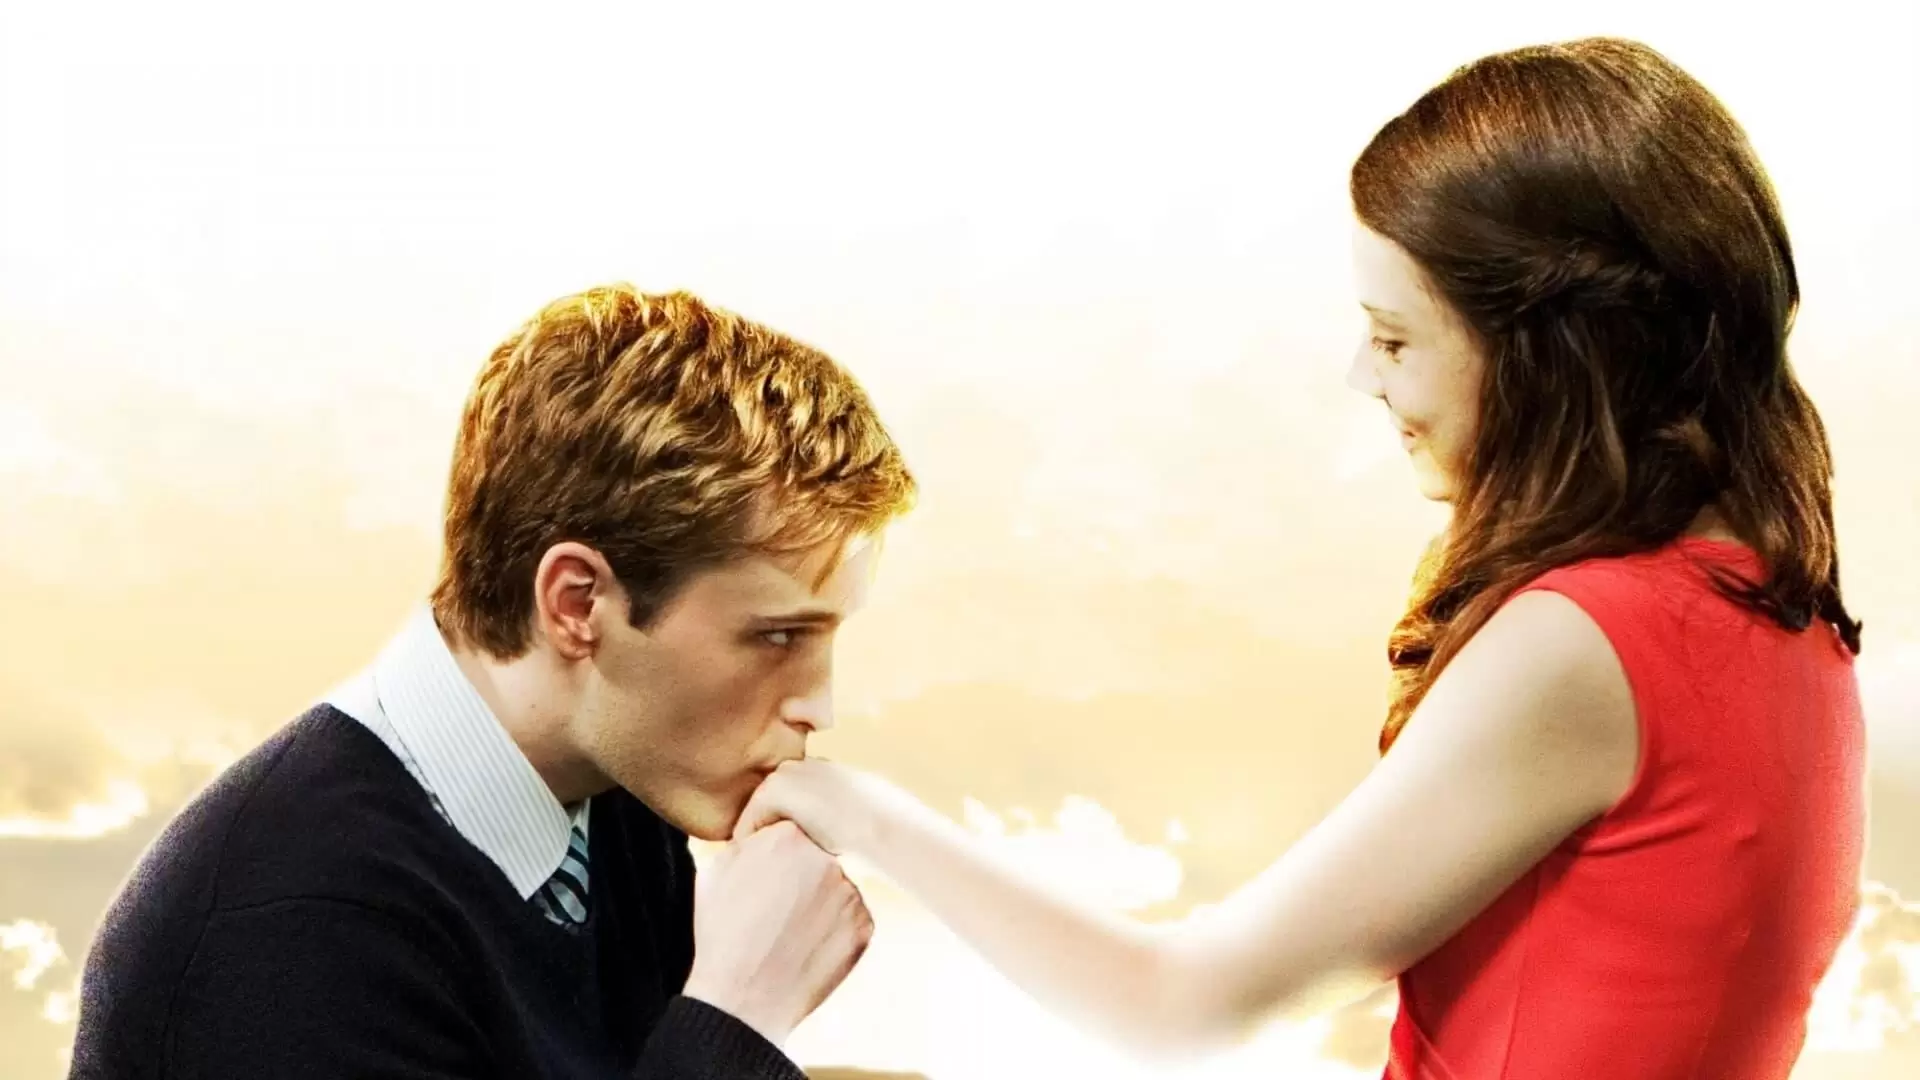 دانلود فیلم William & Catherine: A Royal Romance 2011 (ویلیام و کاترین : یک عشق سلطنتی)